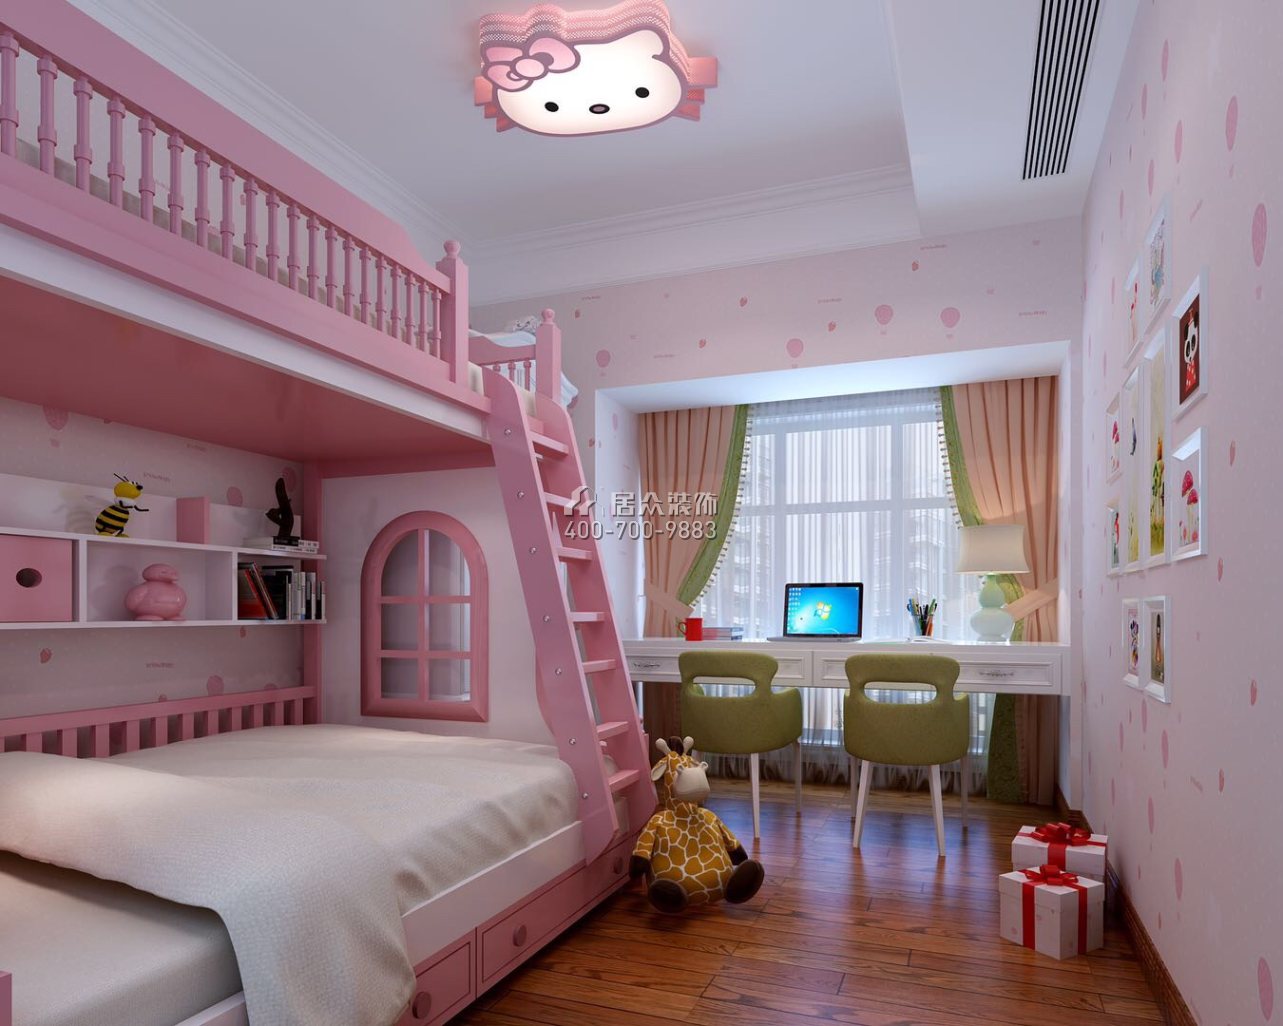 松茂御龙湾雅苑一期160平方米欧式风格平层户型儿童房装修效果图